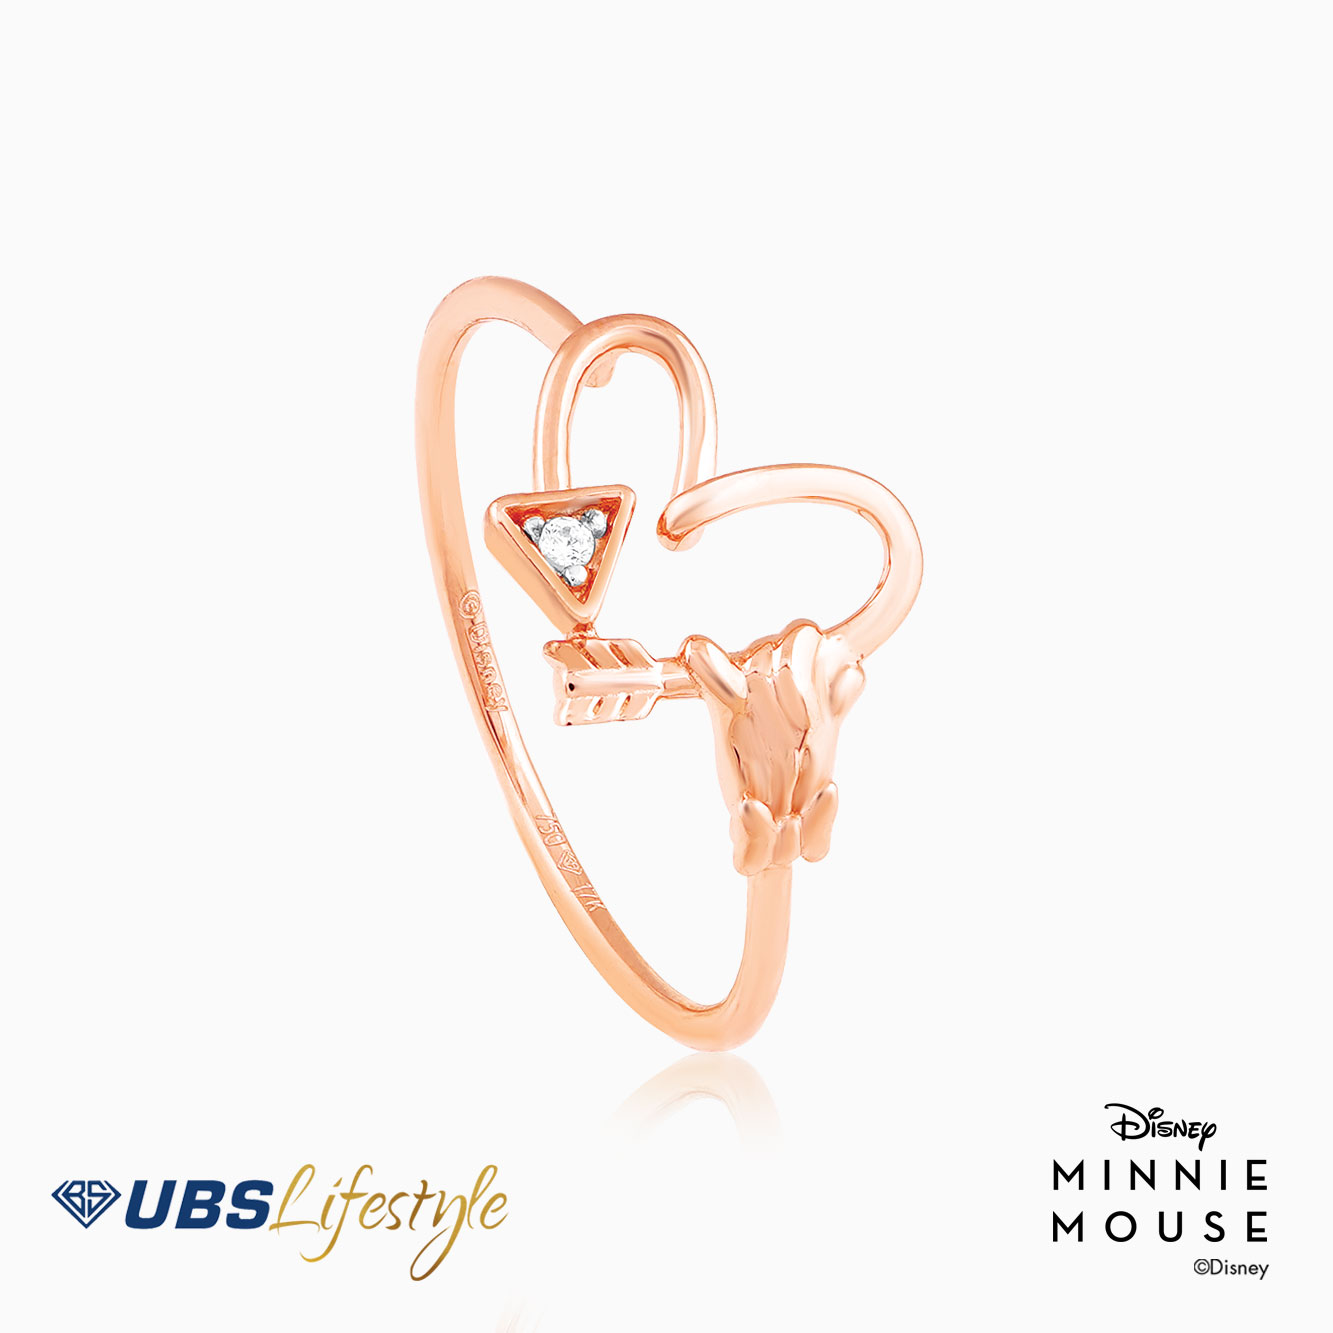 UBS Cincin Emas Disney Minnie Mouse - Ccy0174R - 17K